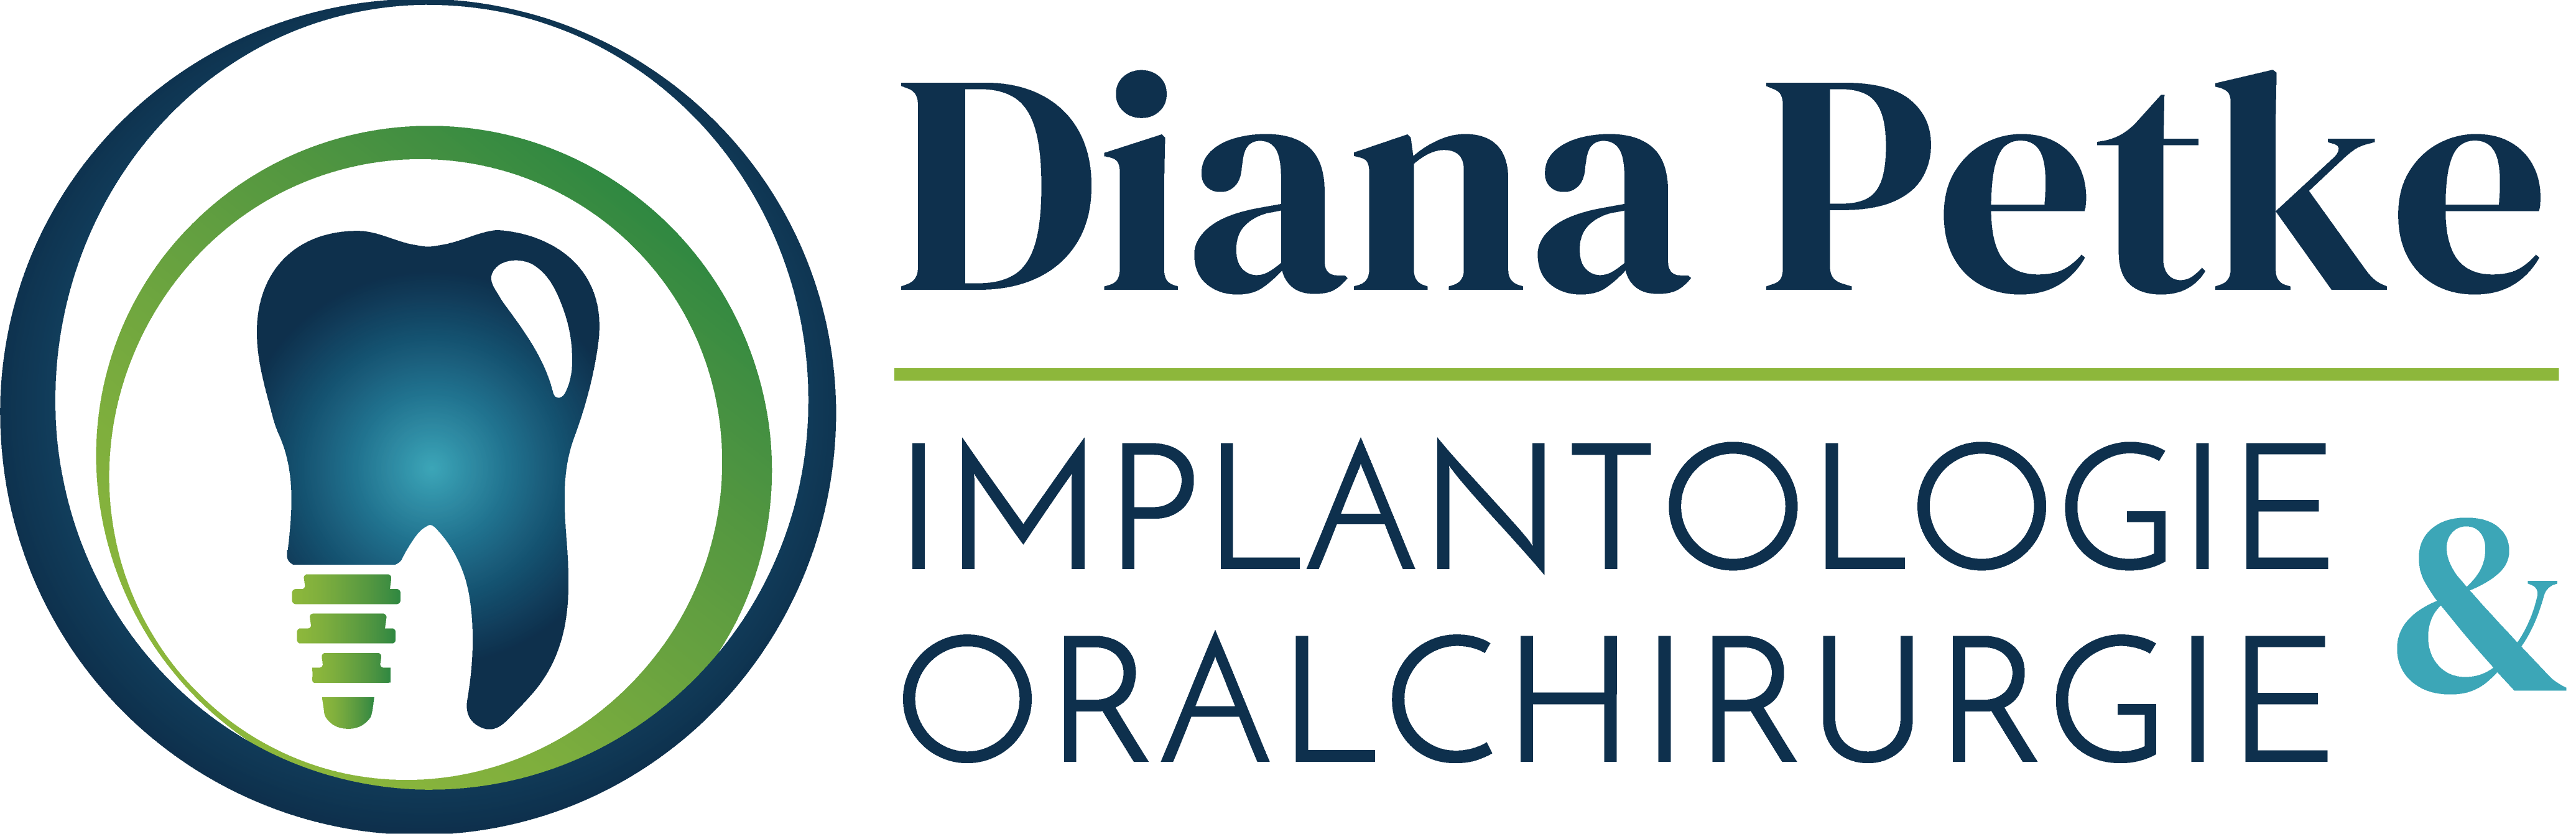 Diana Petke – Fachzahnärztin für Oralchirurgie in Neuruppin